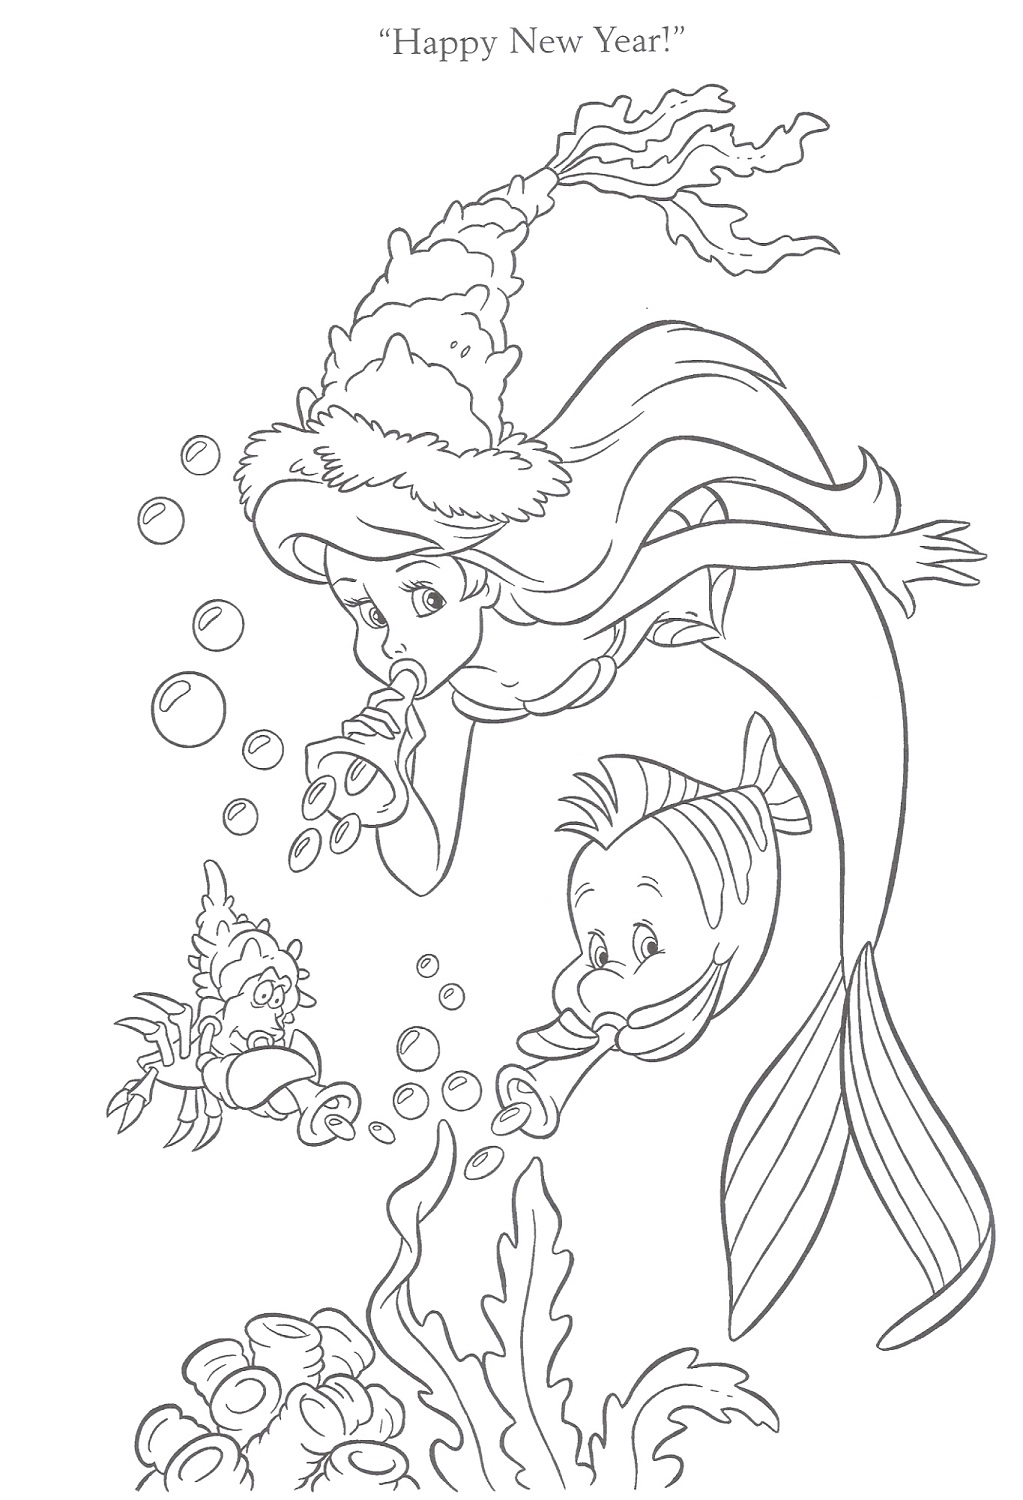 little-mermaid-activities-new-year